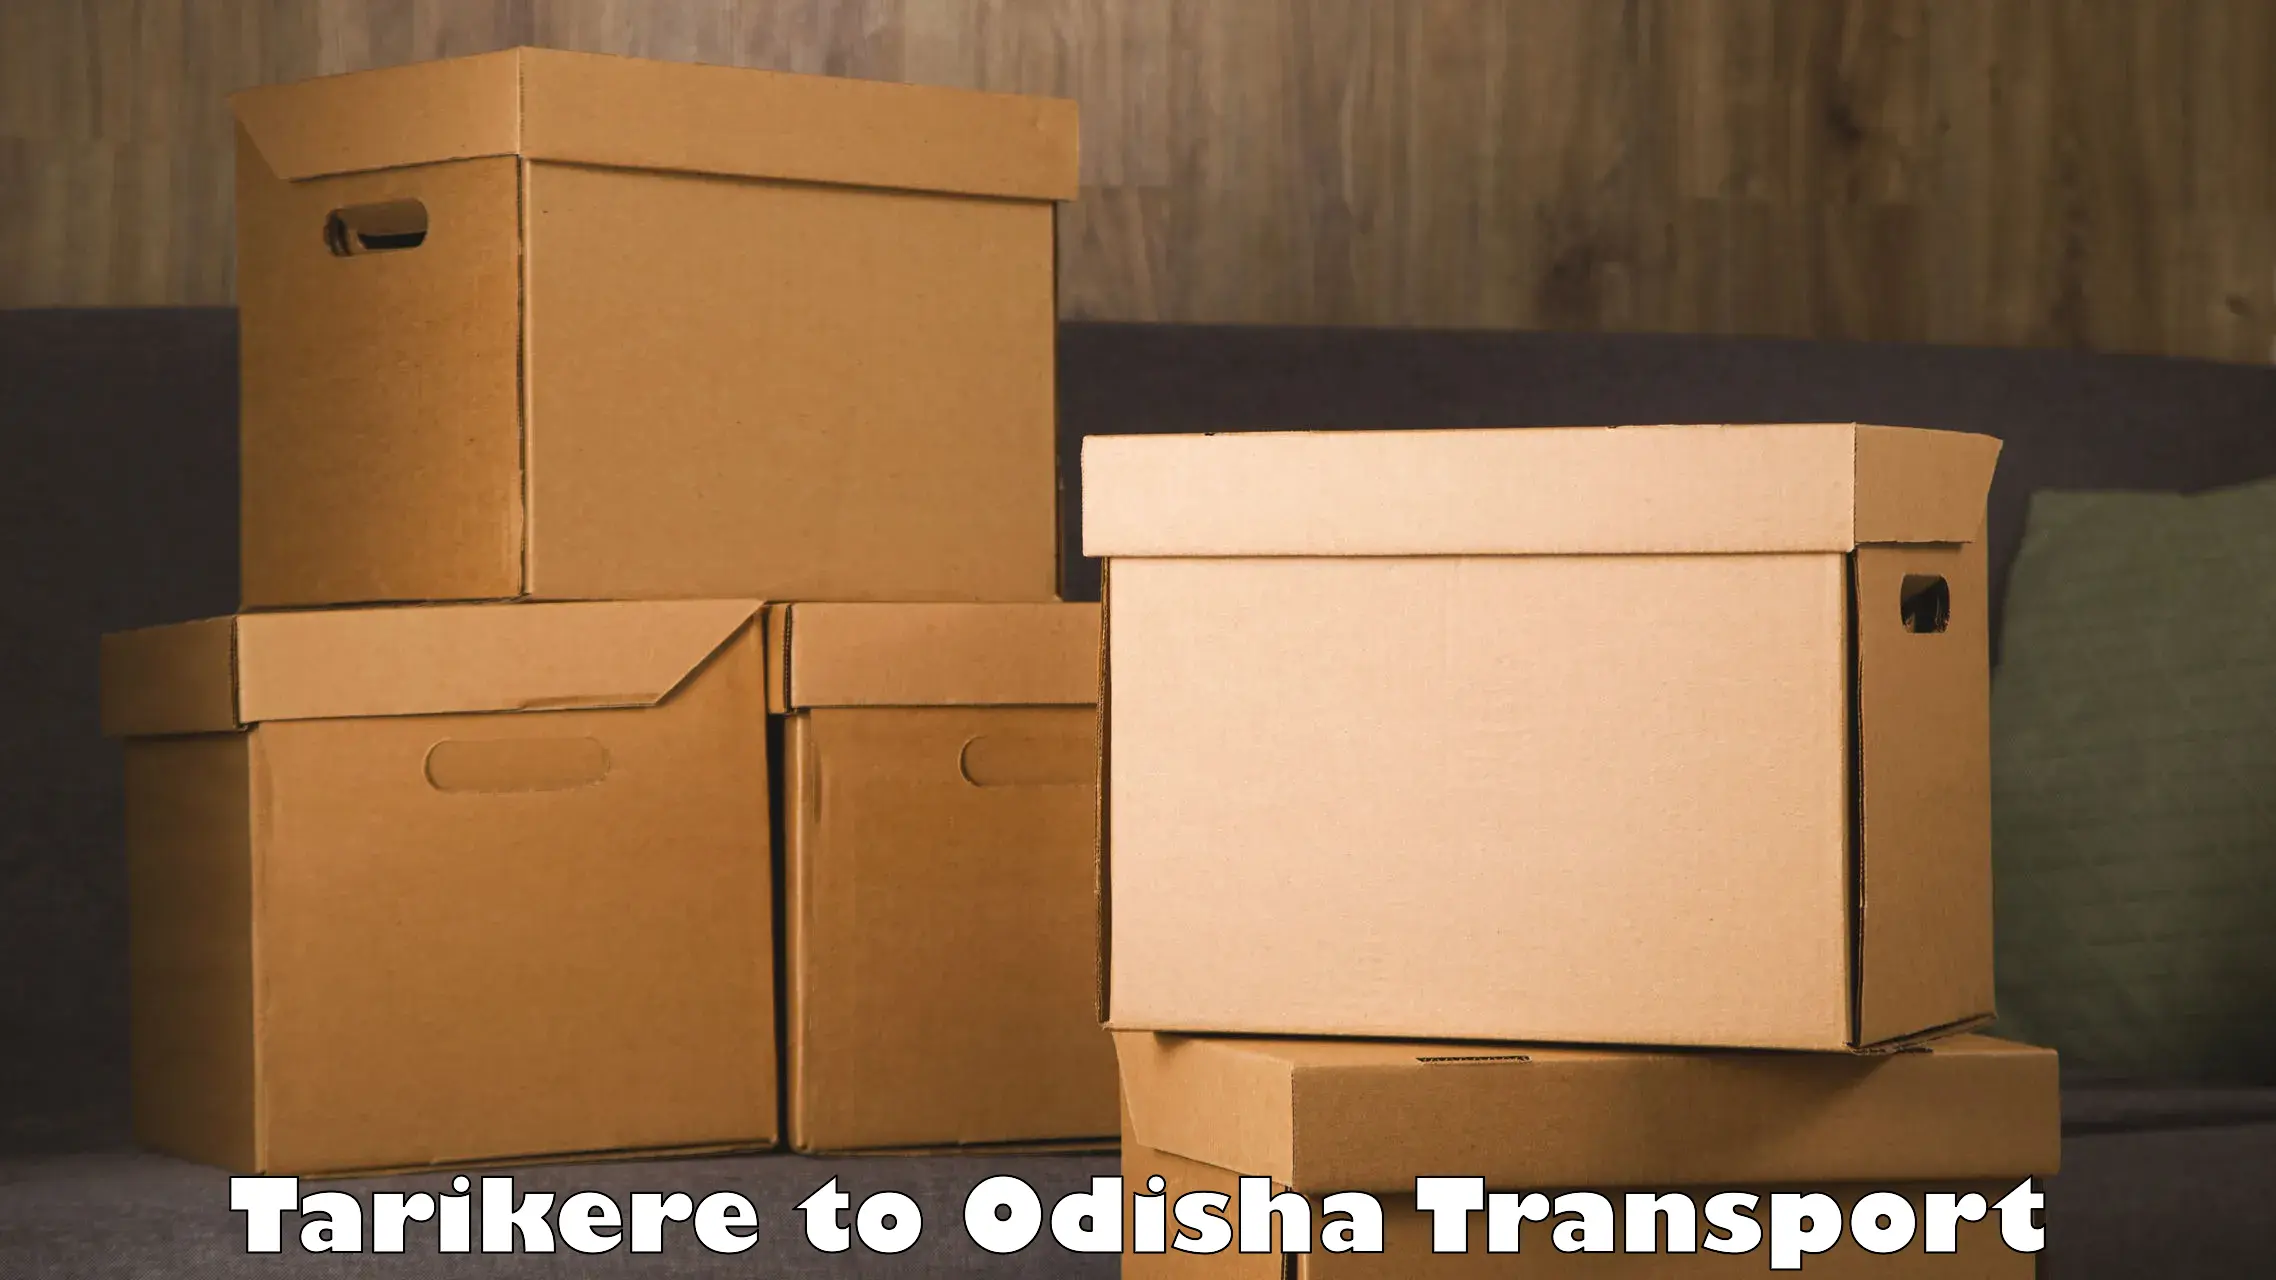 Logistics transportation services Tarikere to Nirakarpur